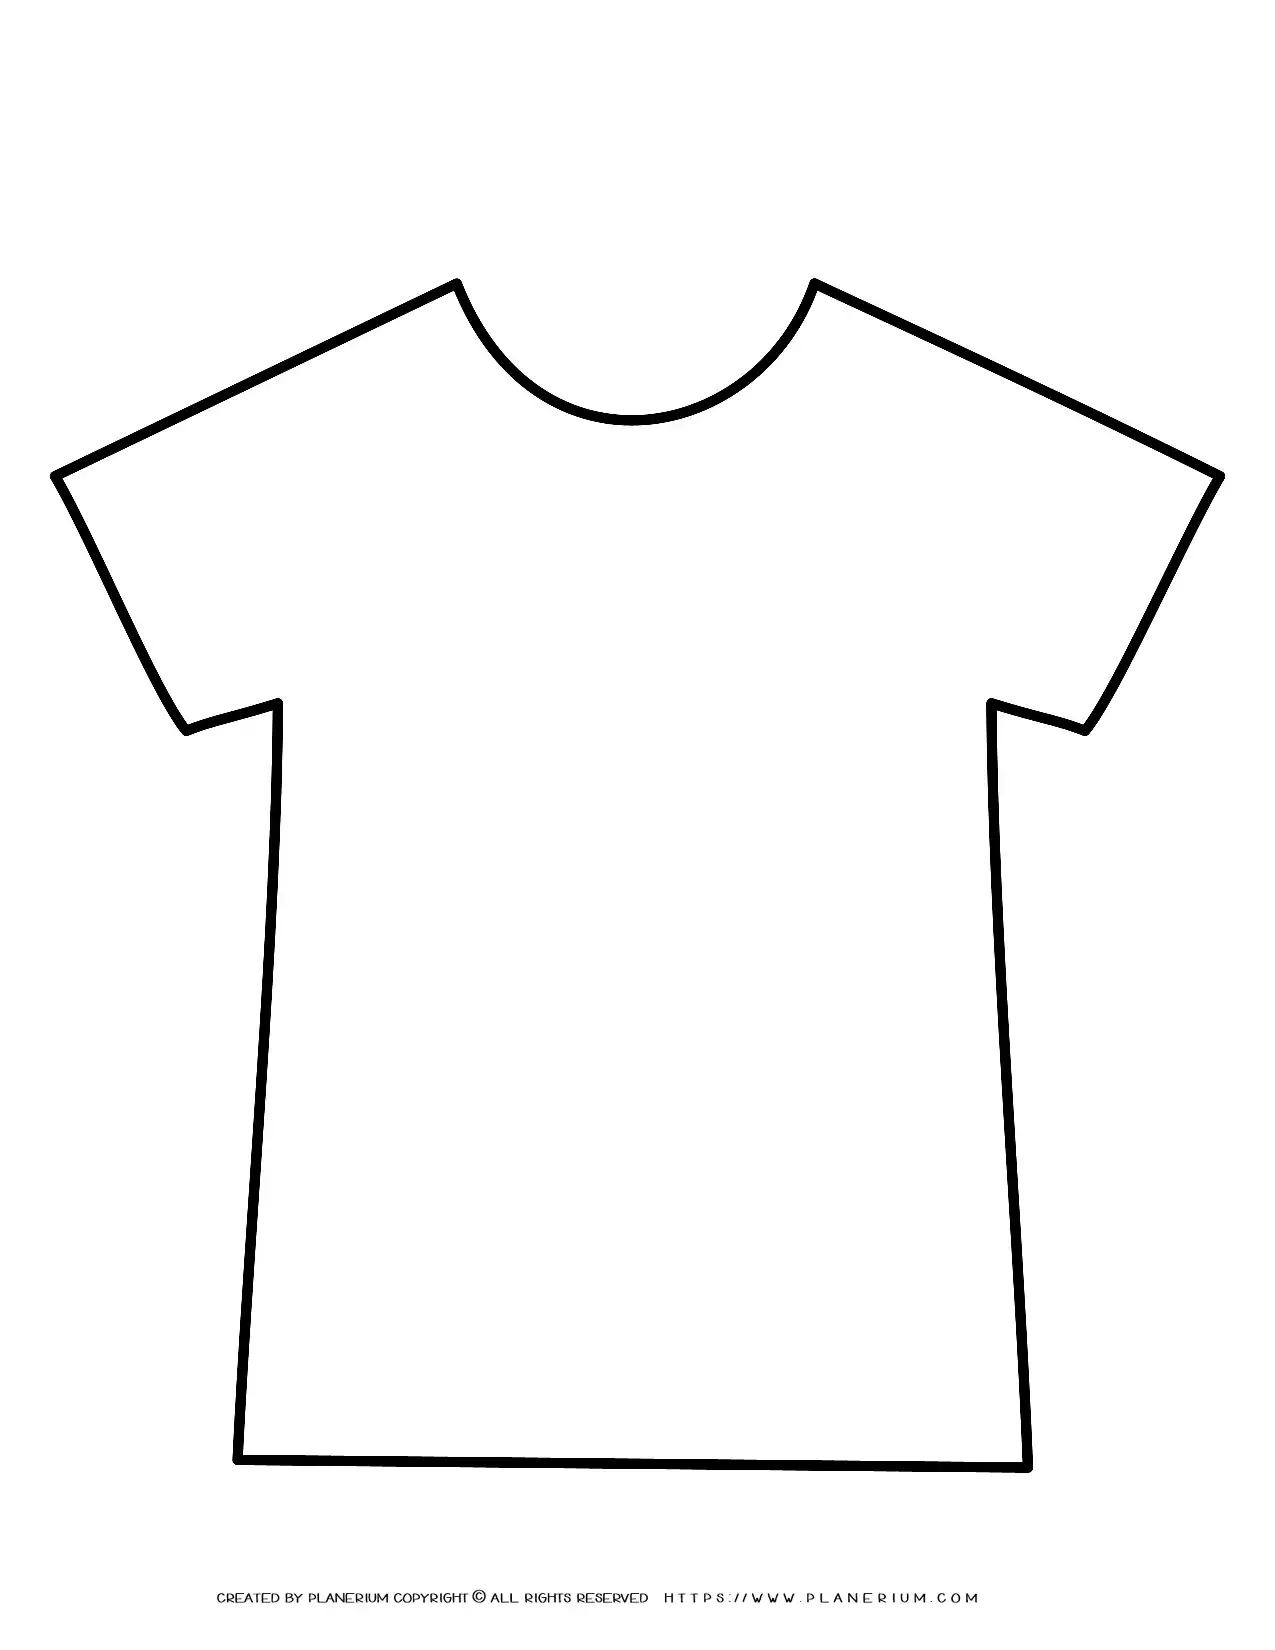 https://www.planerium.com/wp-content/uploads/2020/08/templates-t-shirt-outline-png-planerium-05-03-2021.webp